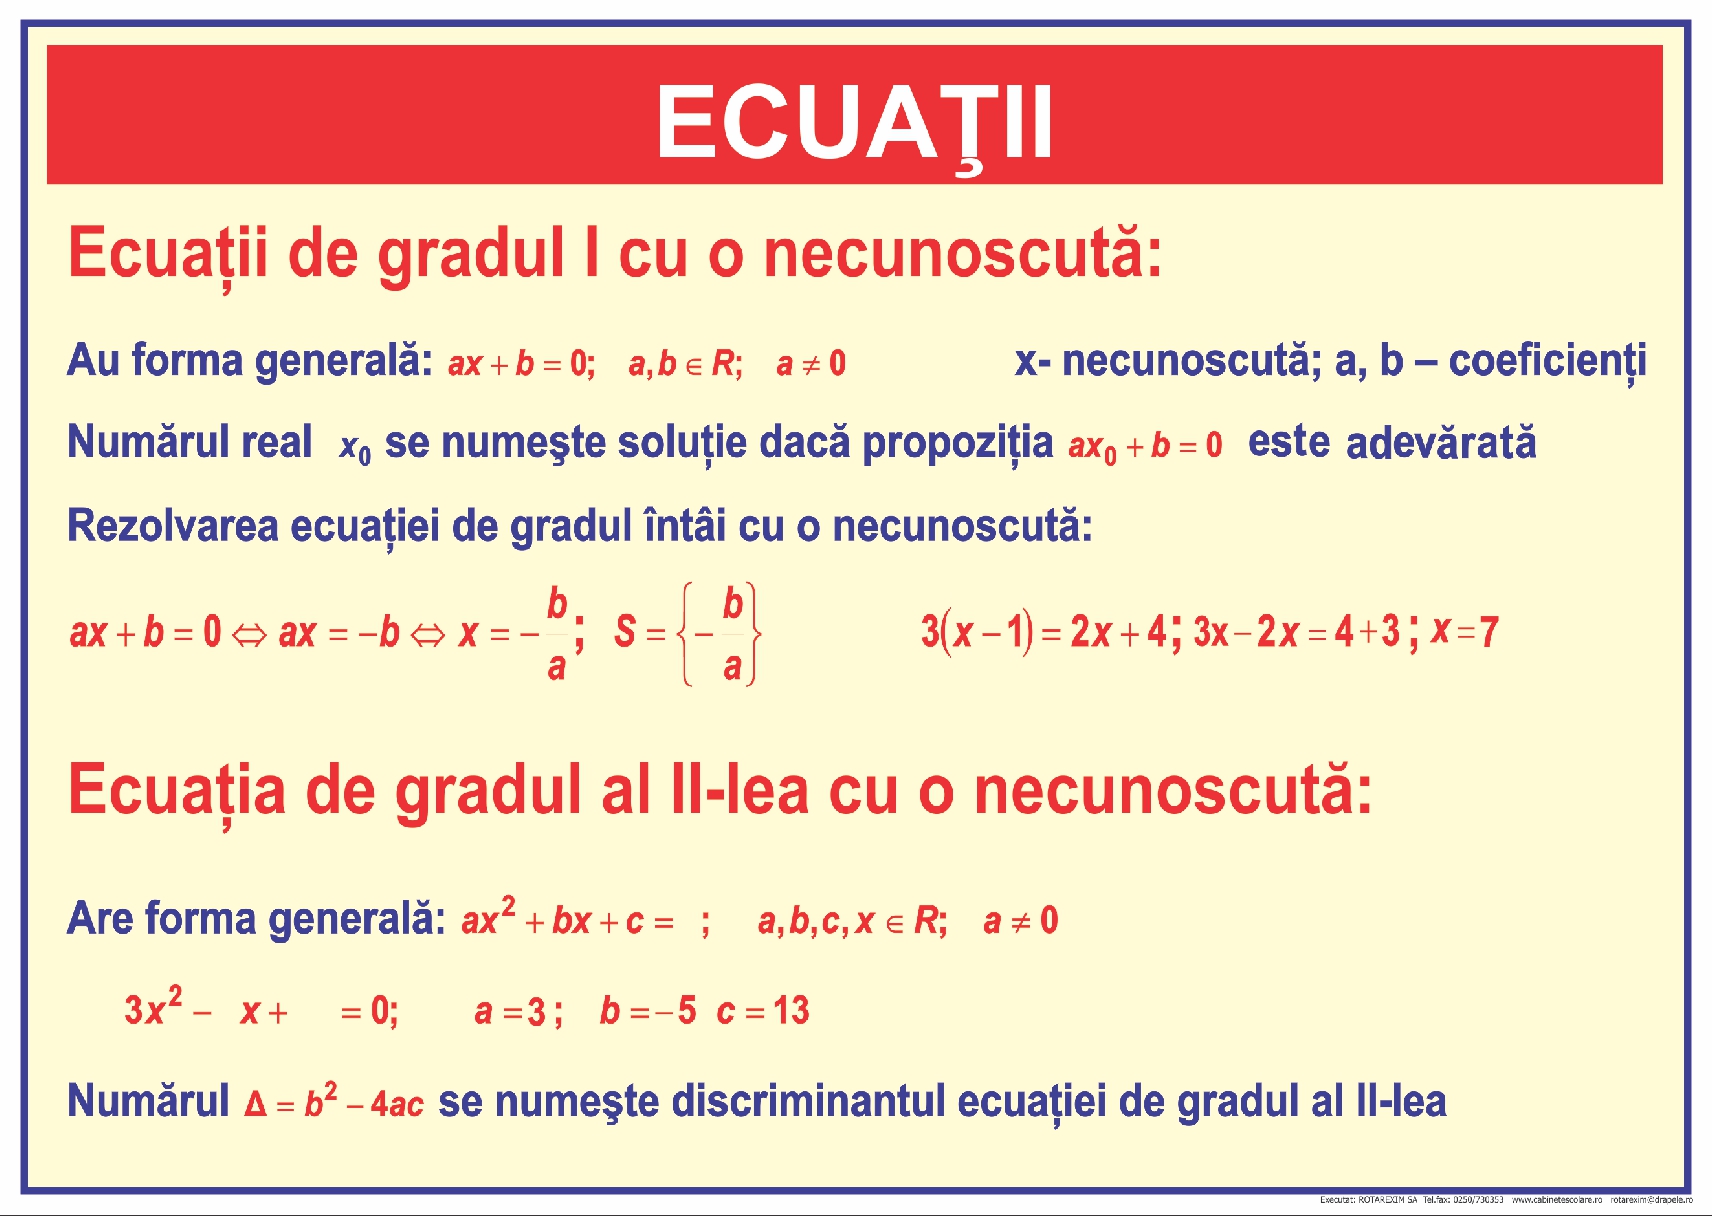 Ecuații. Sisteme de ecuații